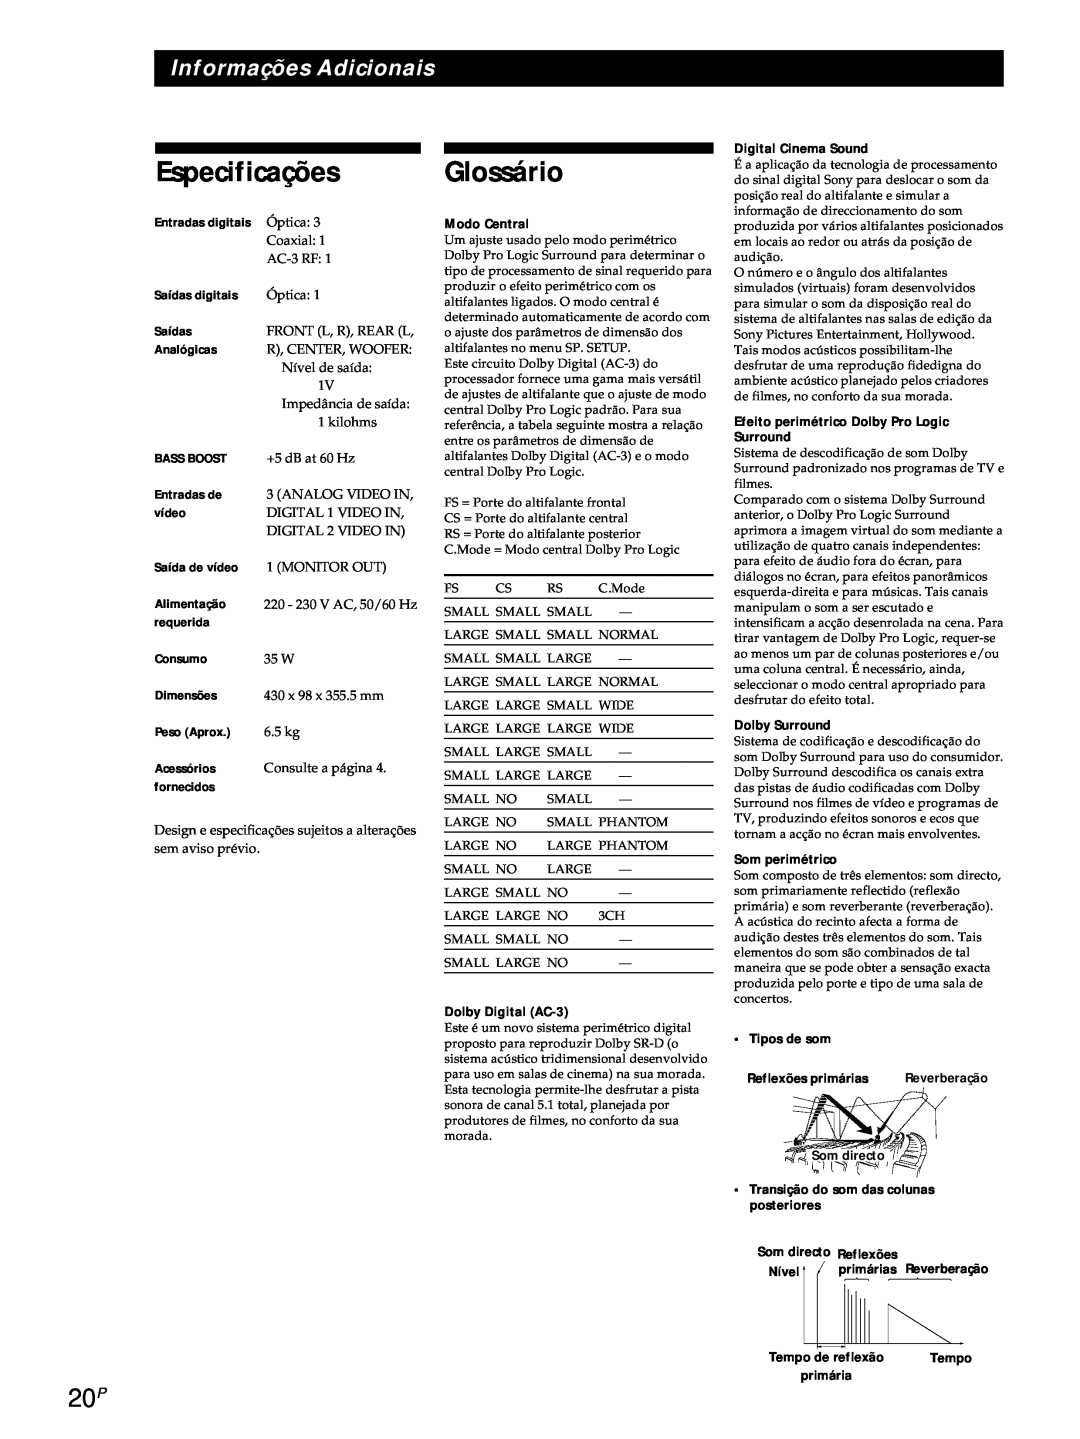 Sony SDP-E800 Especificações Glossário, Informações Adicionais, Monitor Out, 220 - 230 V AC, 50/60 Hz, 35 W, 6.5 kg 